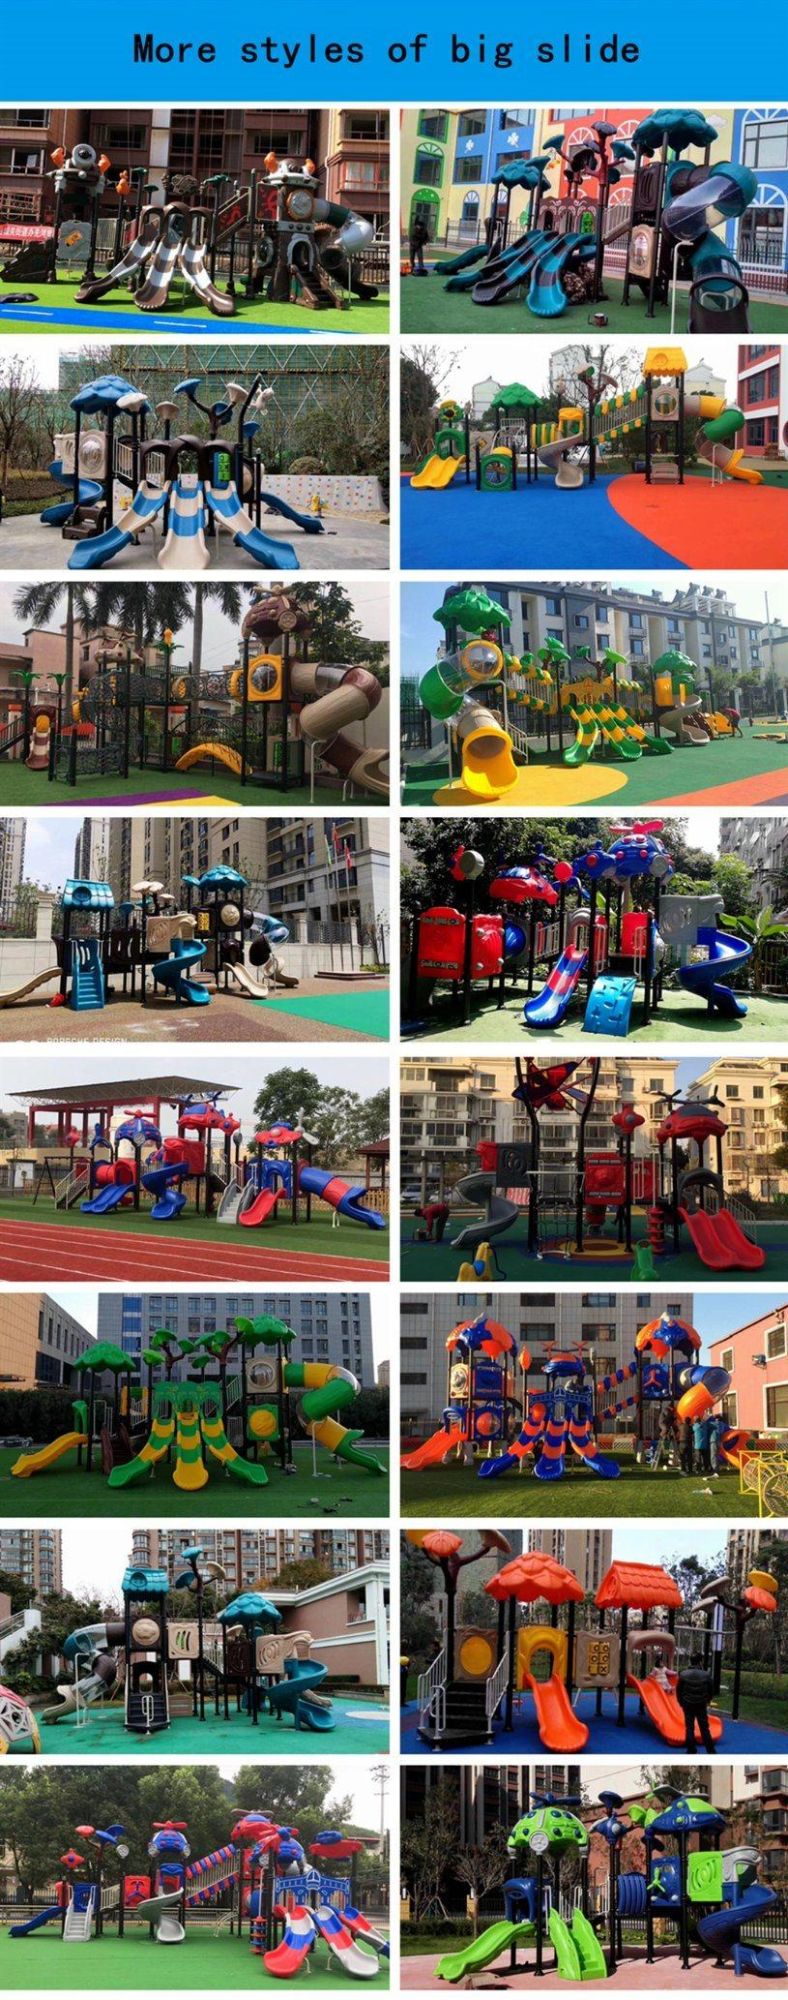 Community Outdoor Playground Slides Children′s School Amusement Park Equipment 485b